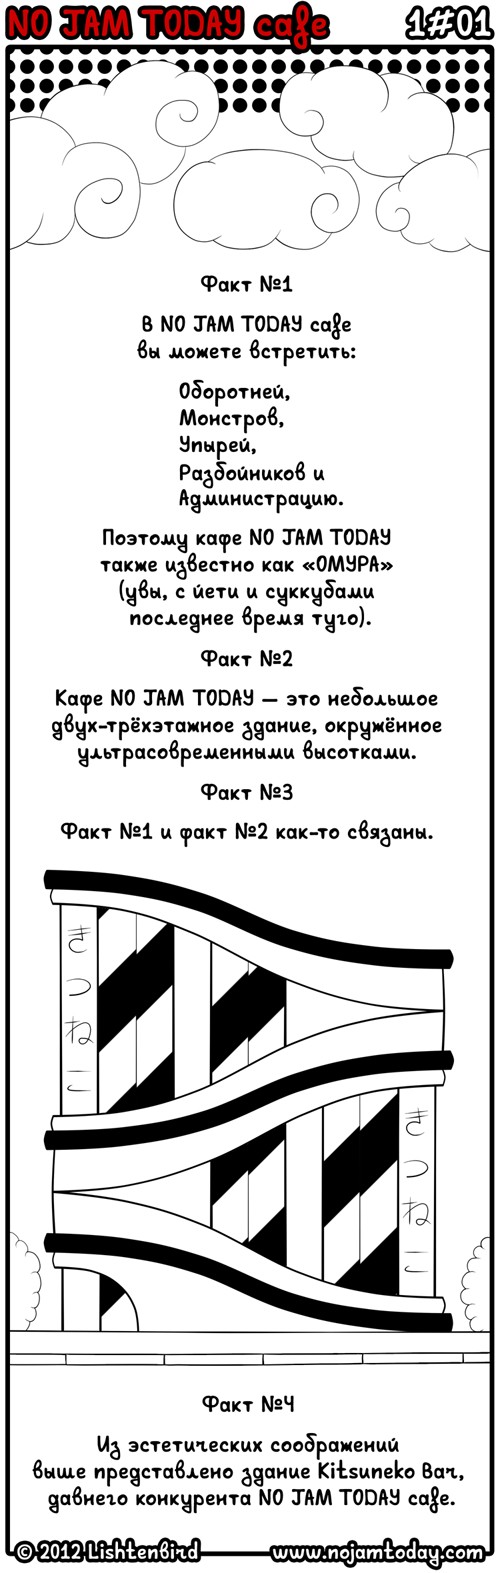 Комикс NO JAM TODAY cafe: выпуск №2